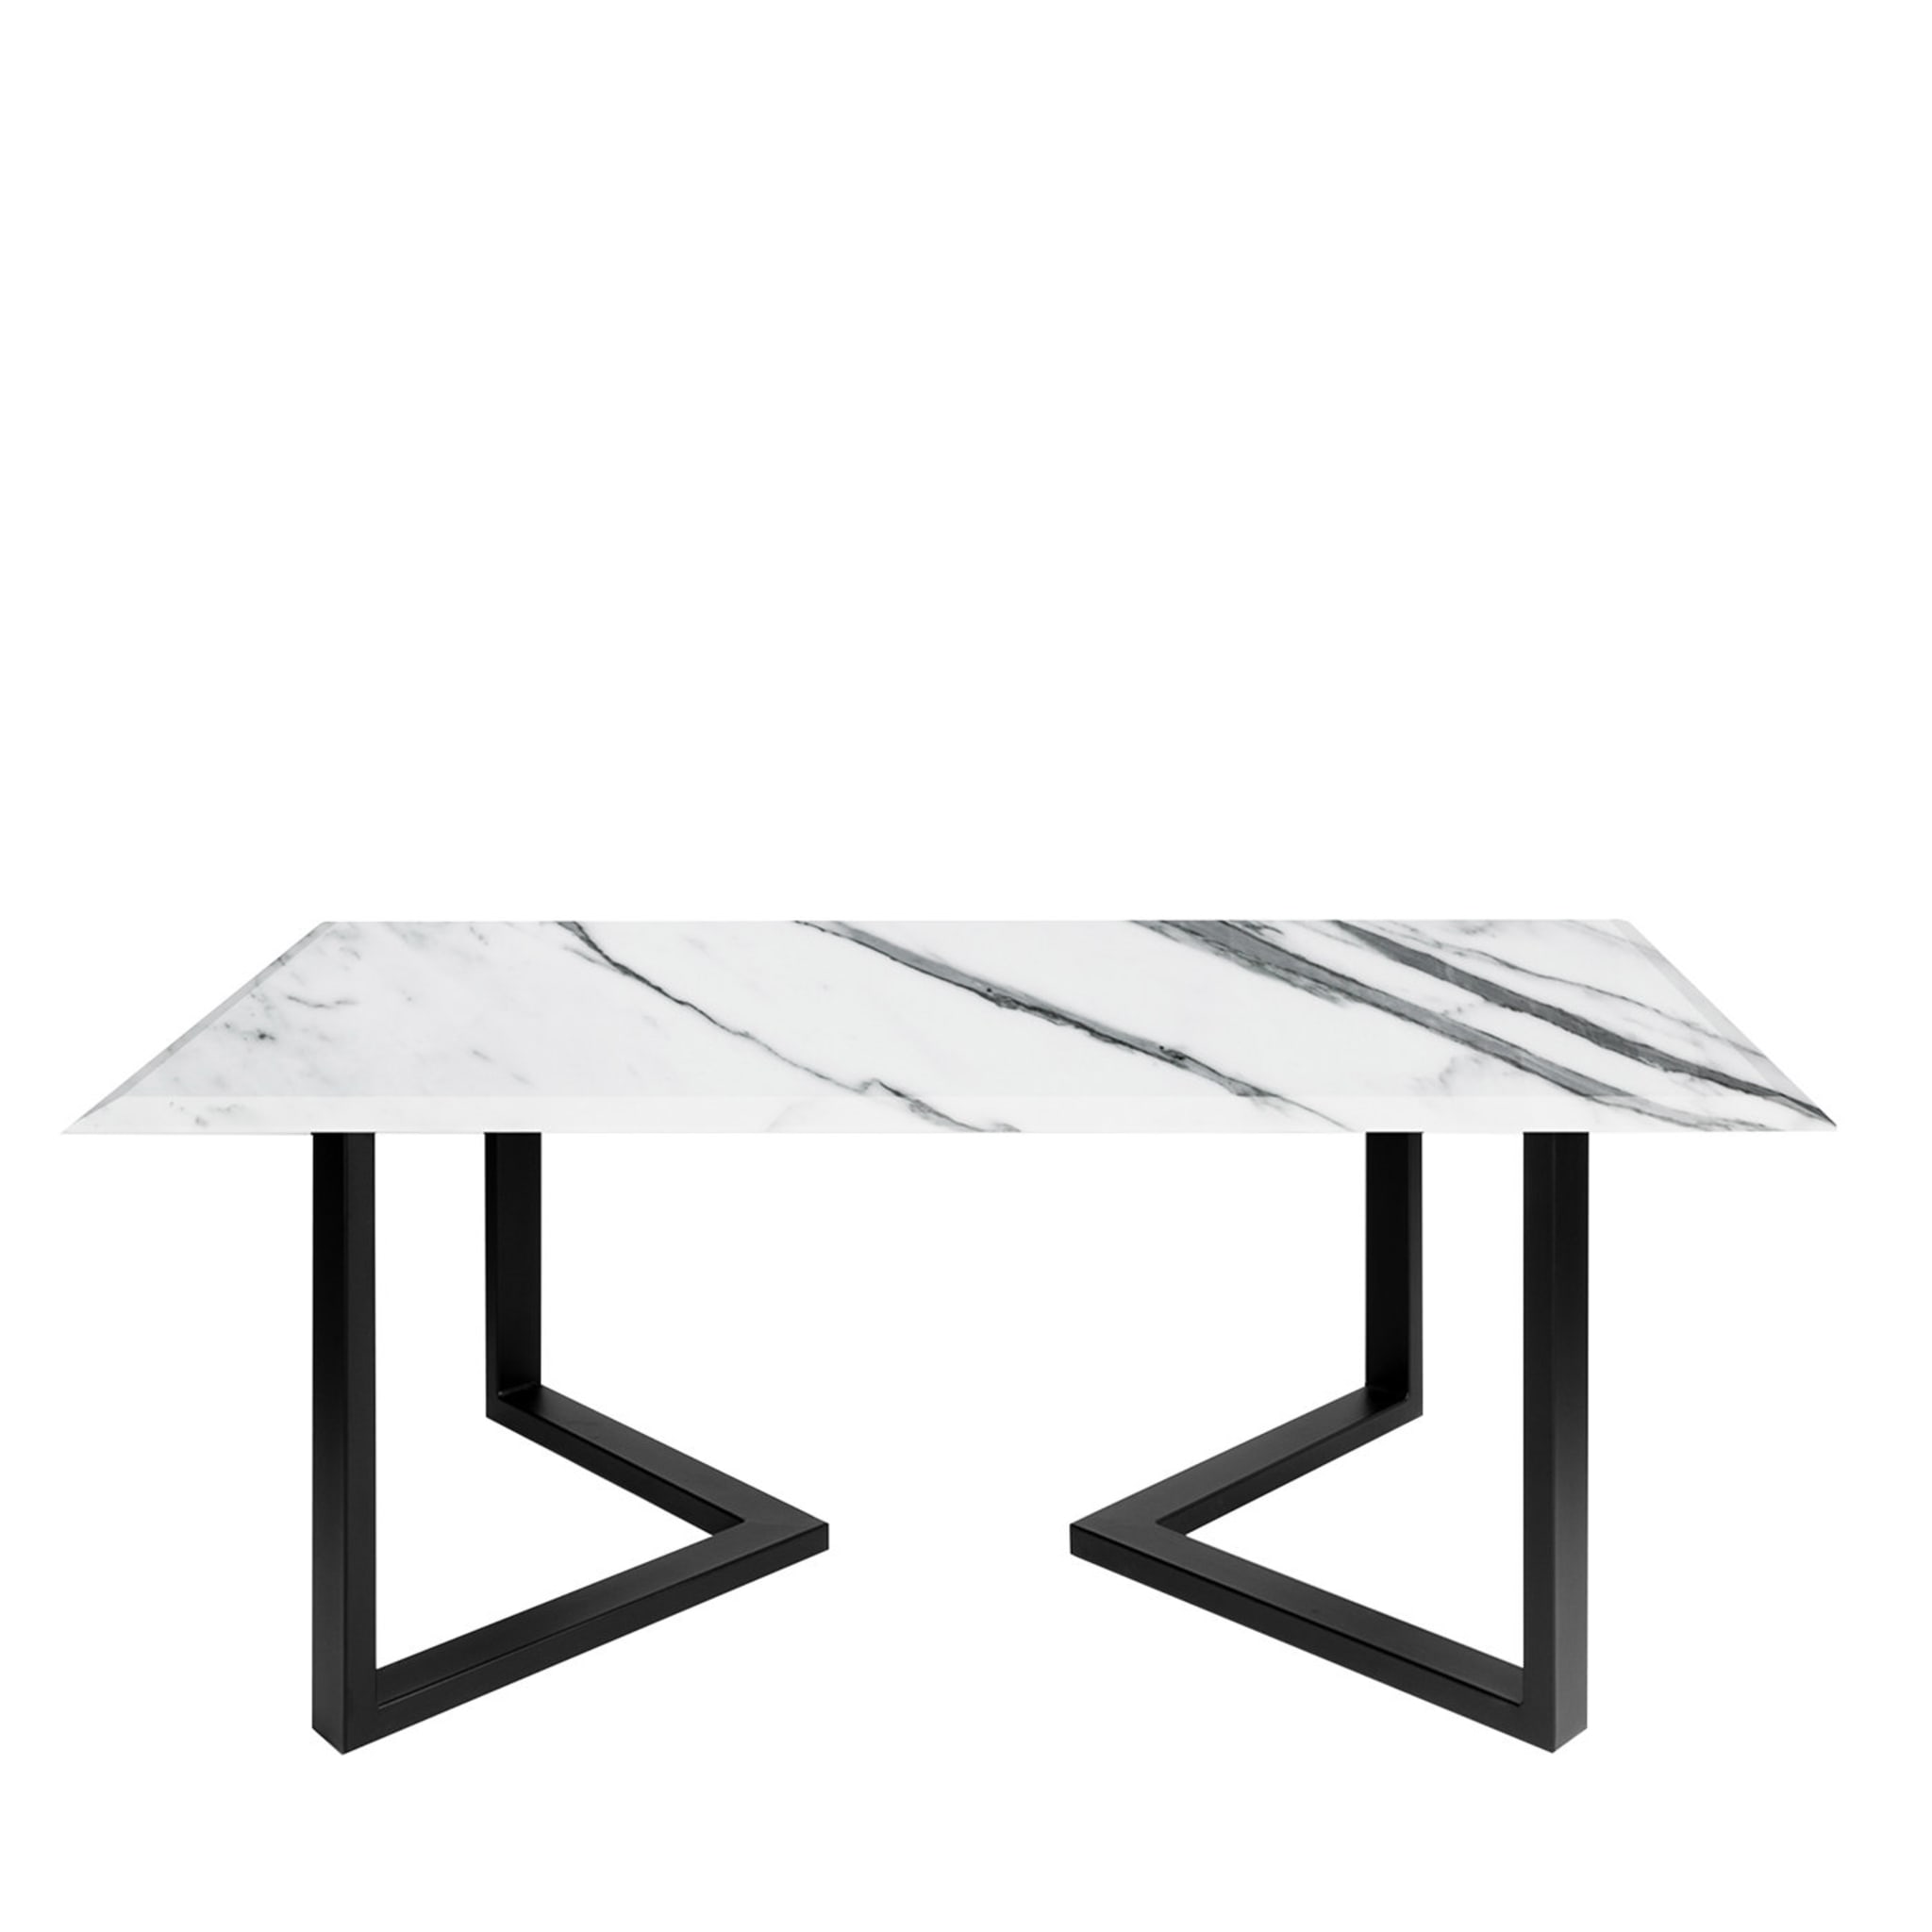 Sparviero Statuario Carrara Dining Table - Alternative view 1